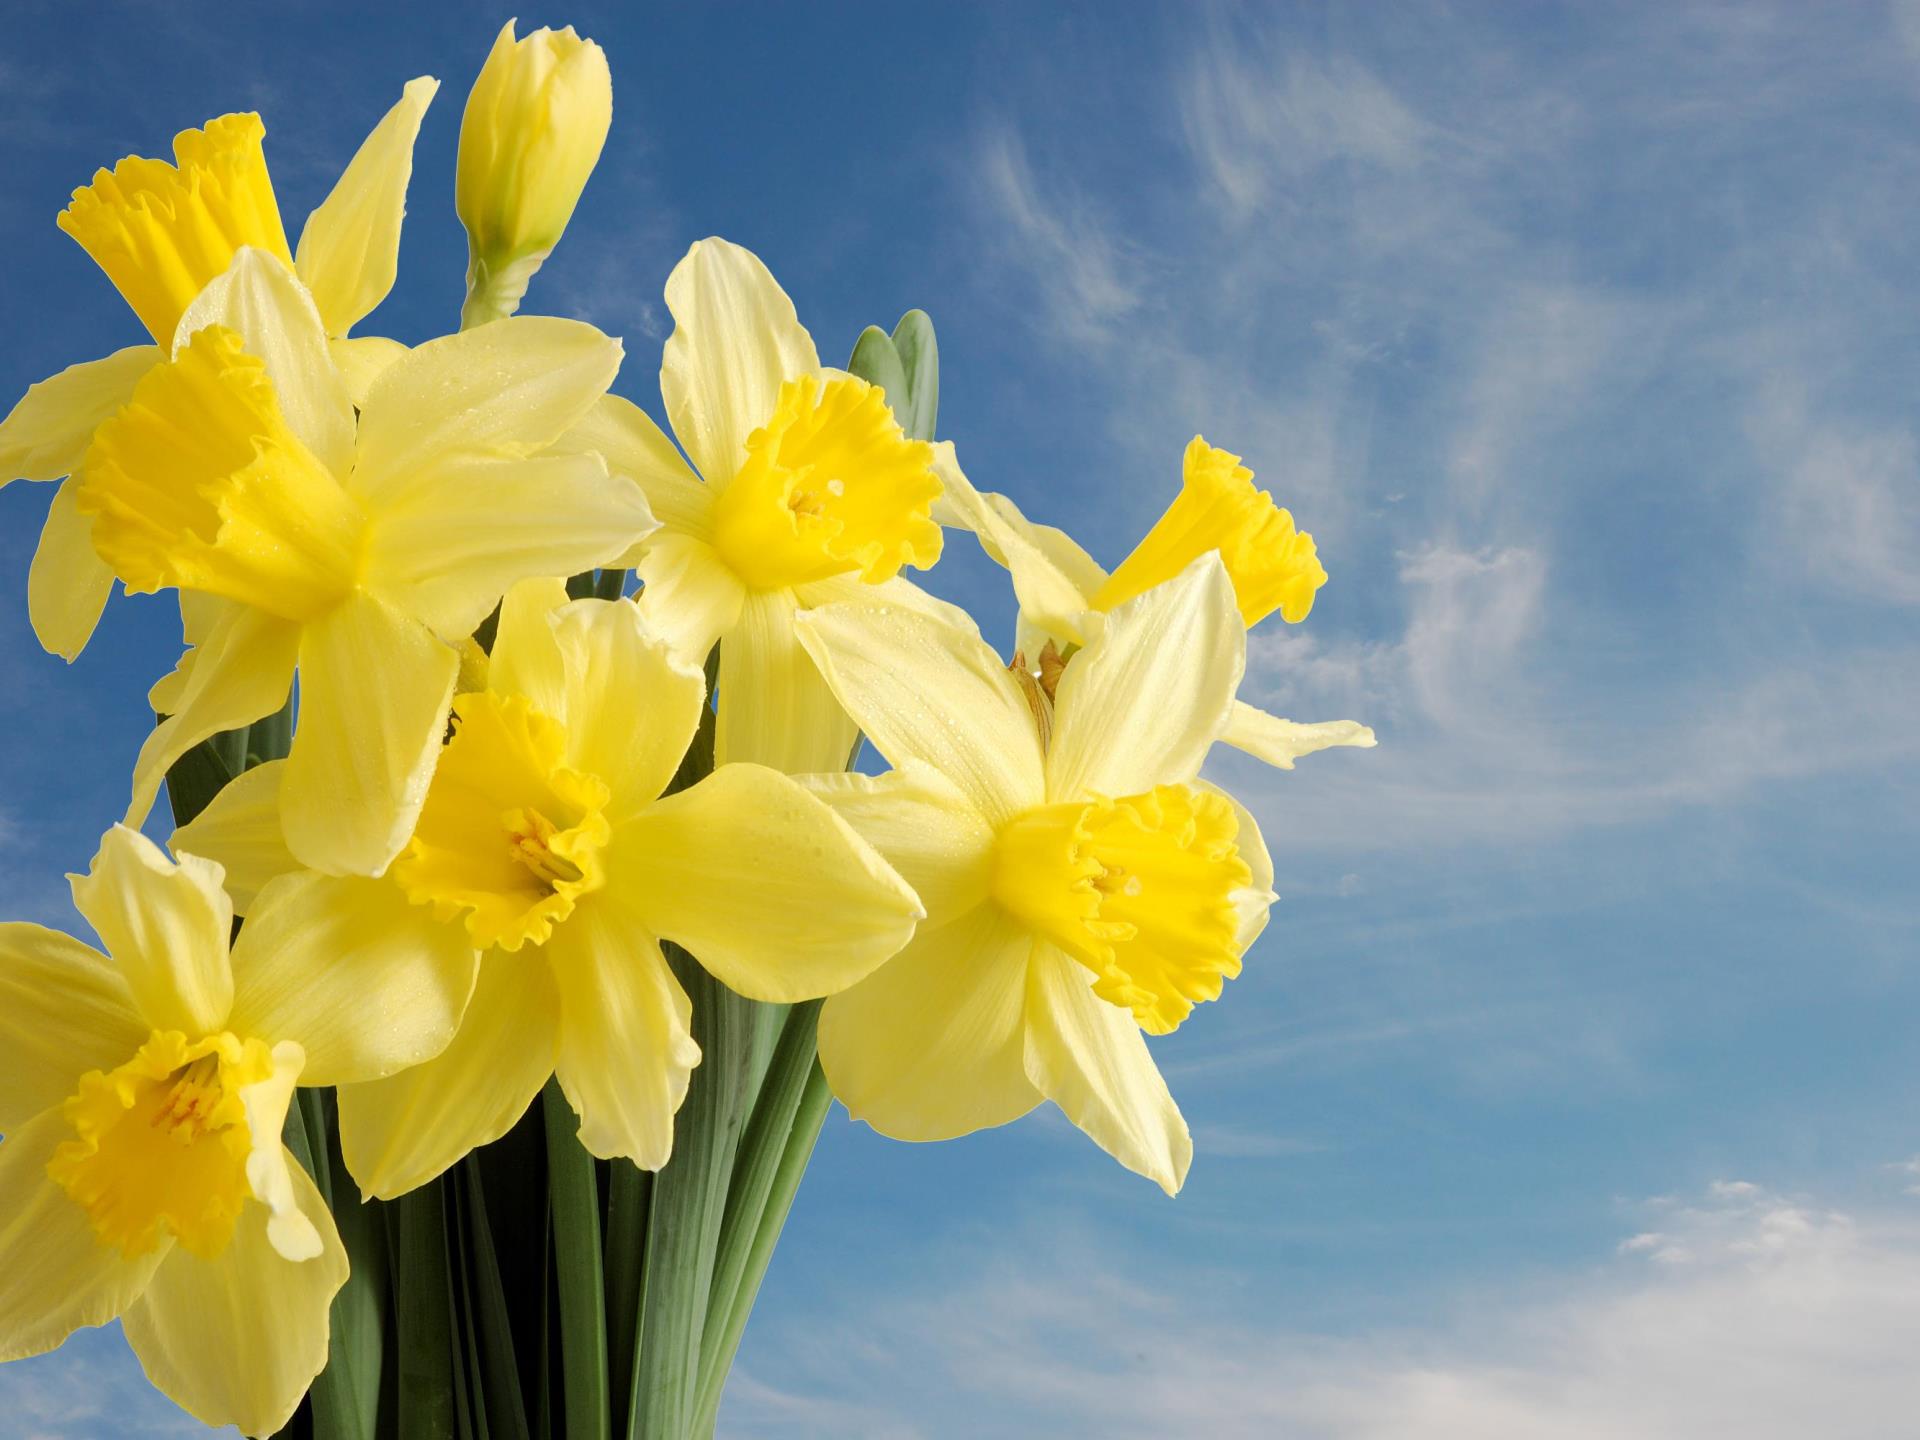 Welsh Daffodils